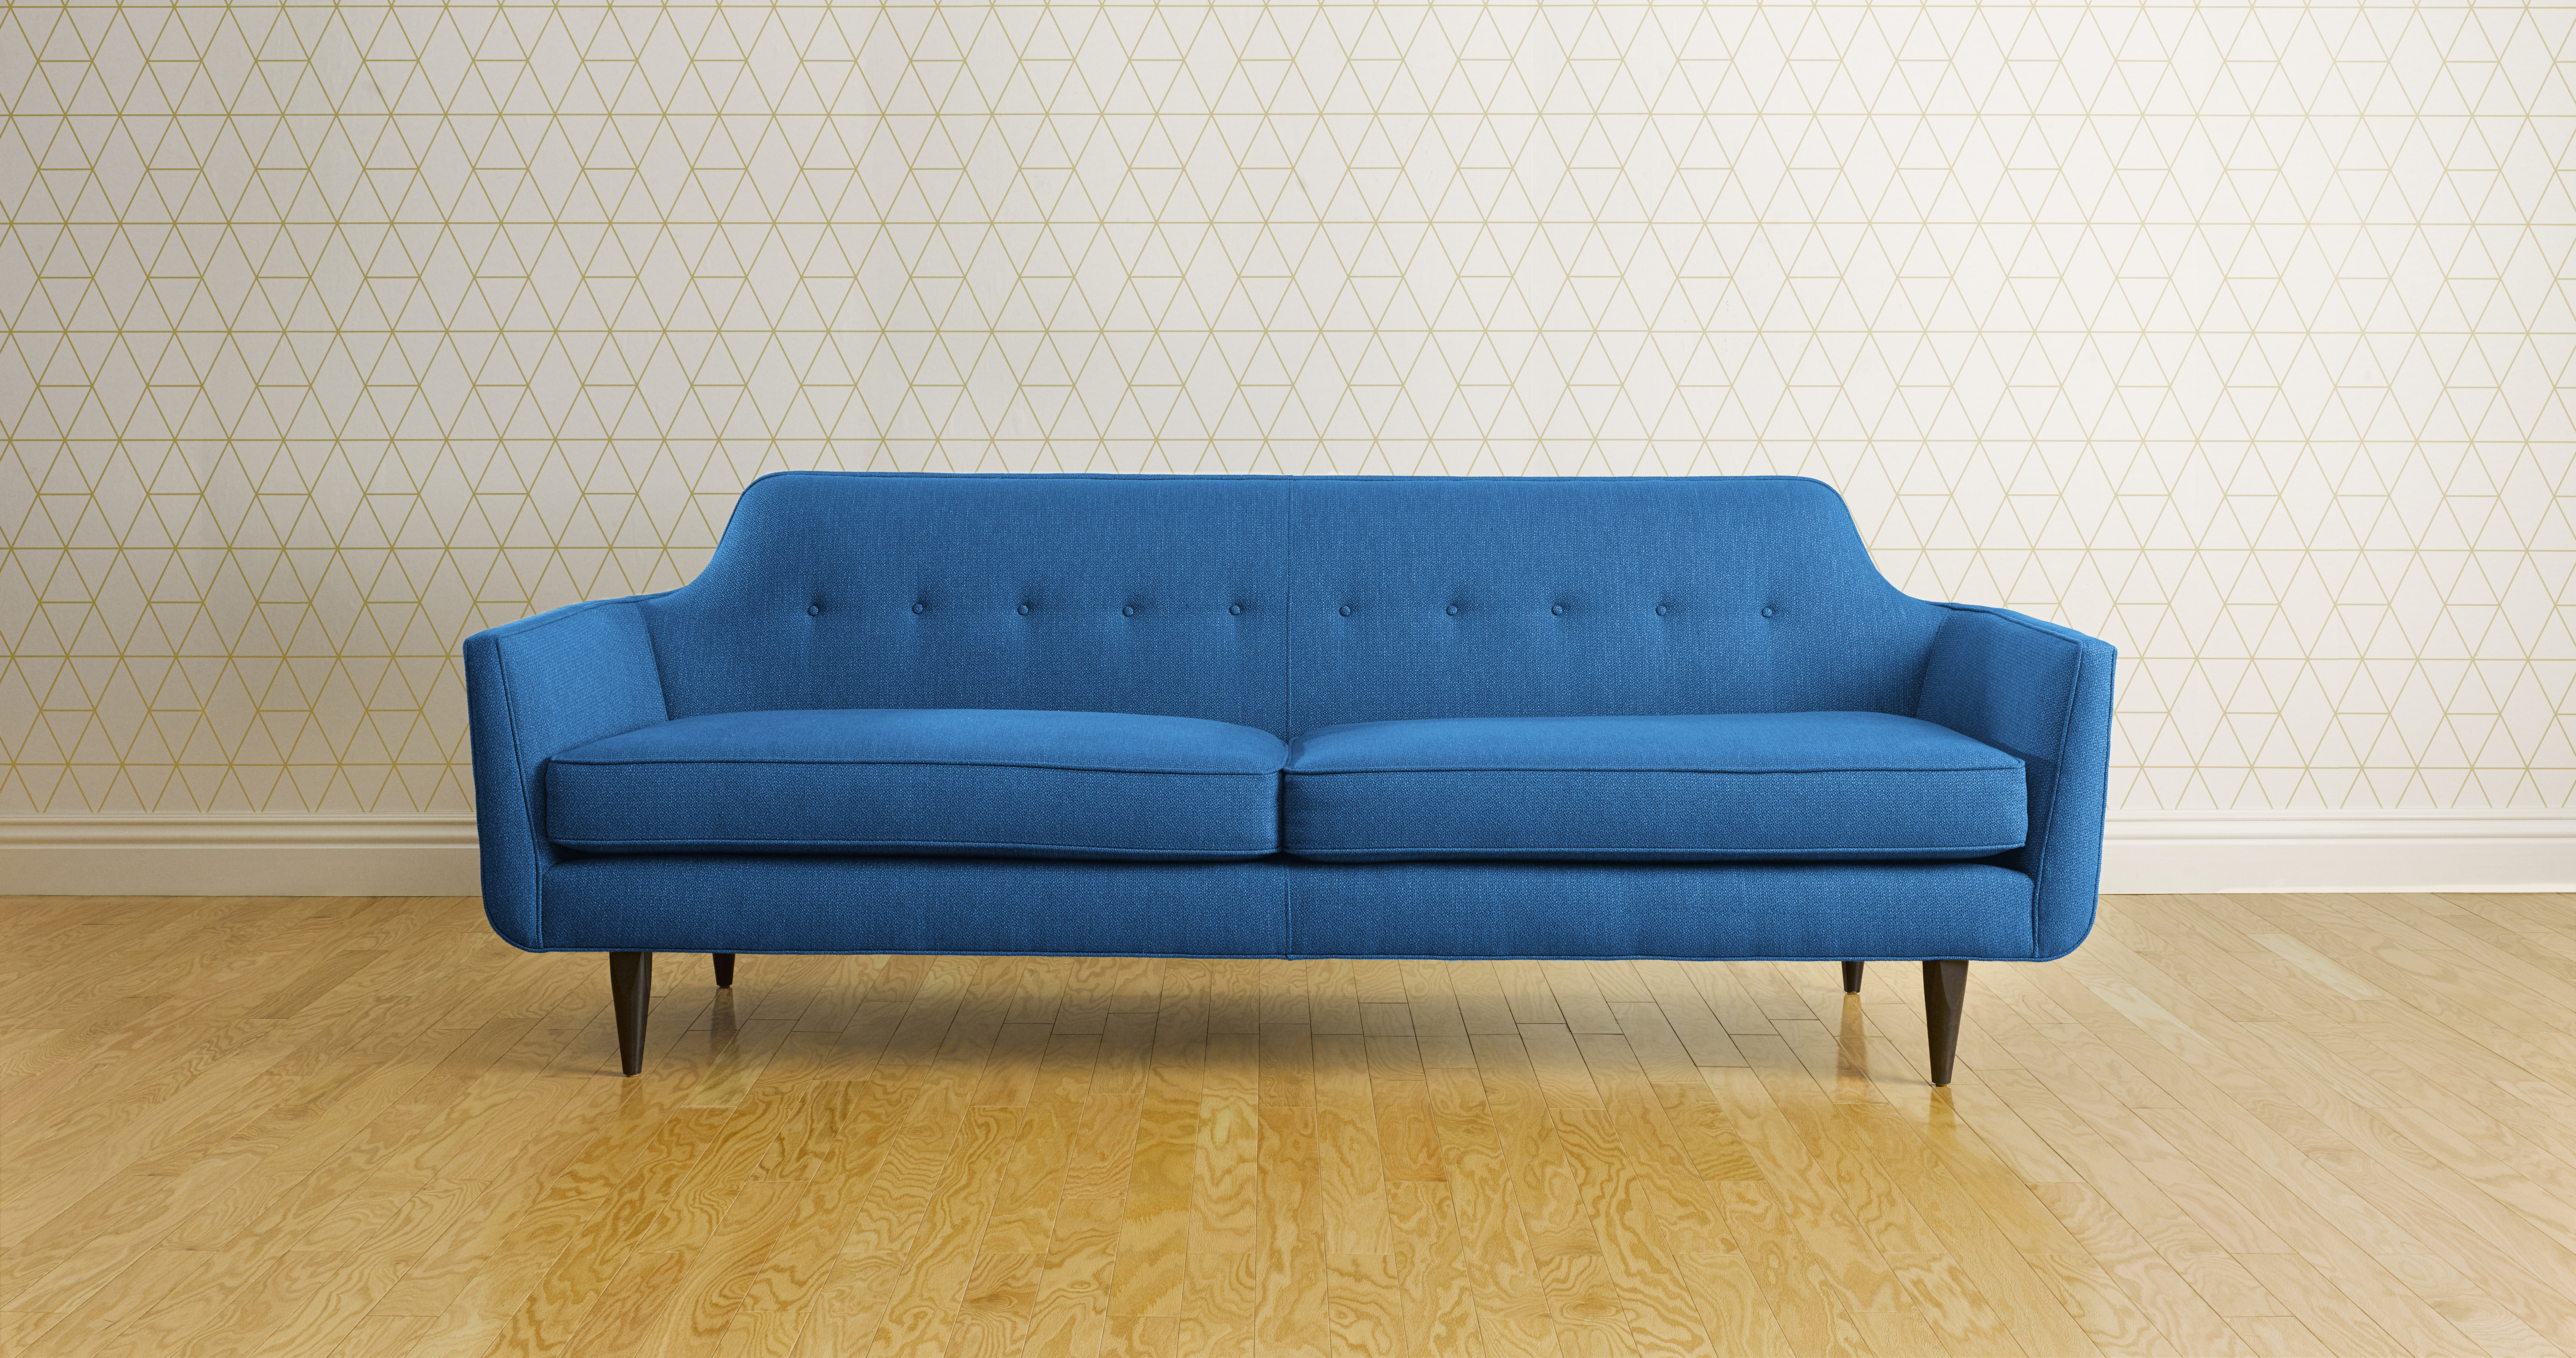 3703_ebay_Blue_Couch_v3